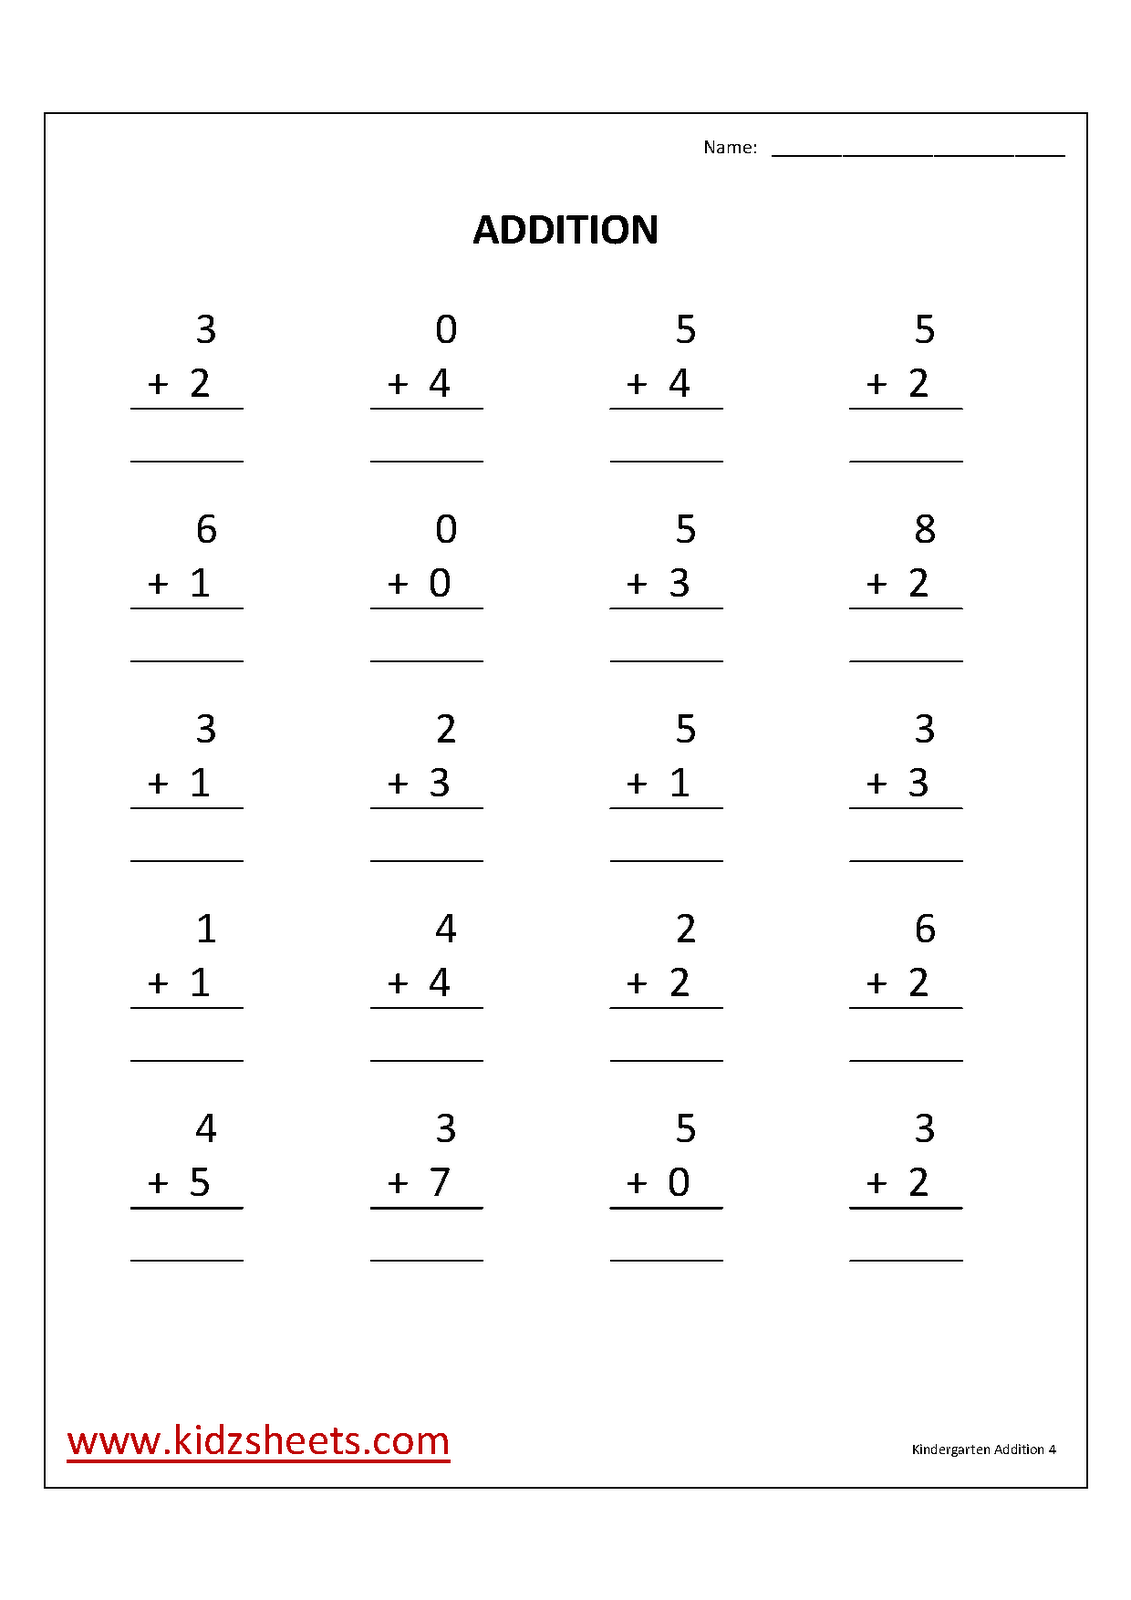 KGAddition4 - Adding Worksheets For Kindergarten